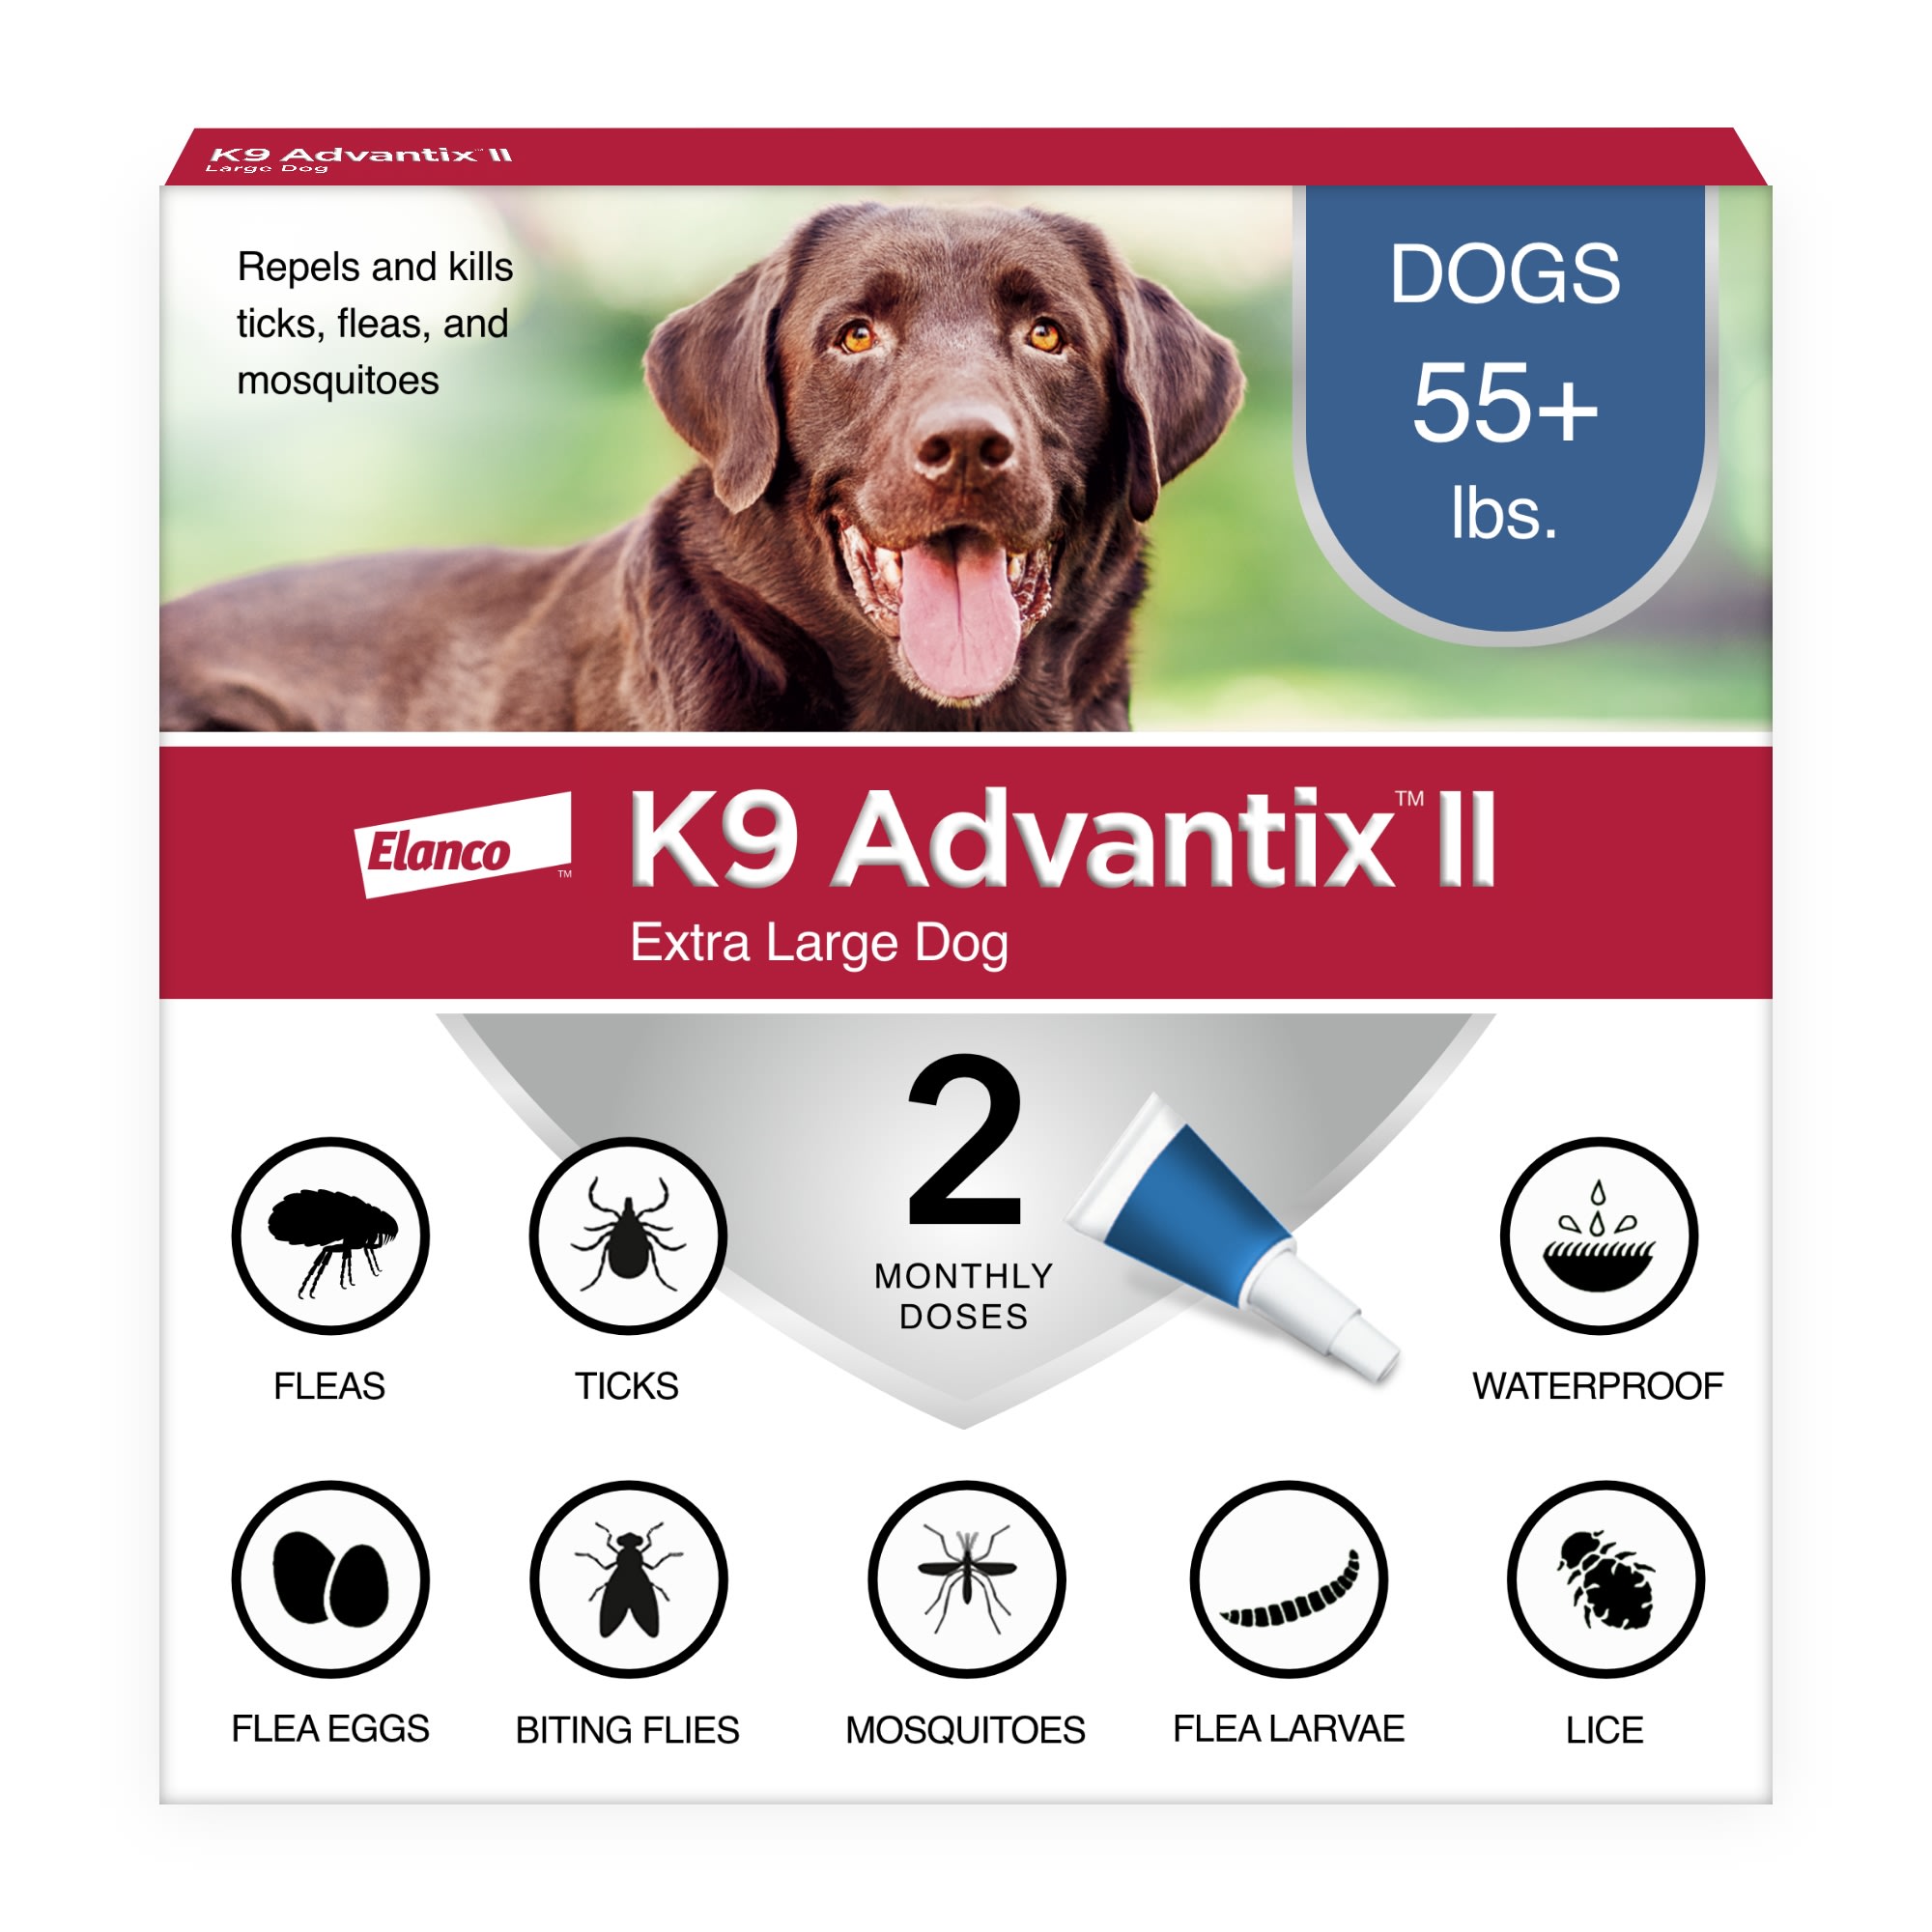 k9 advantix ii extra large dog coupon